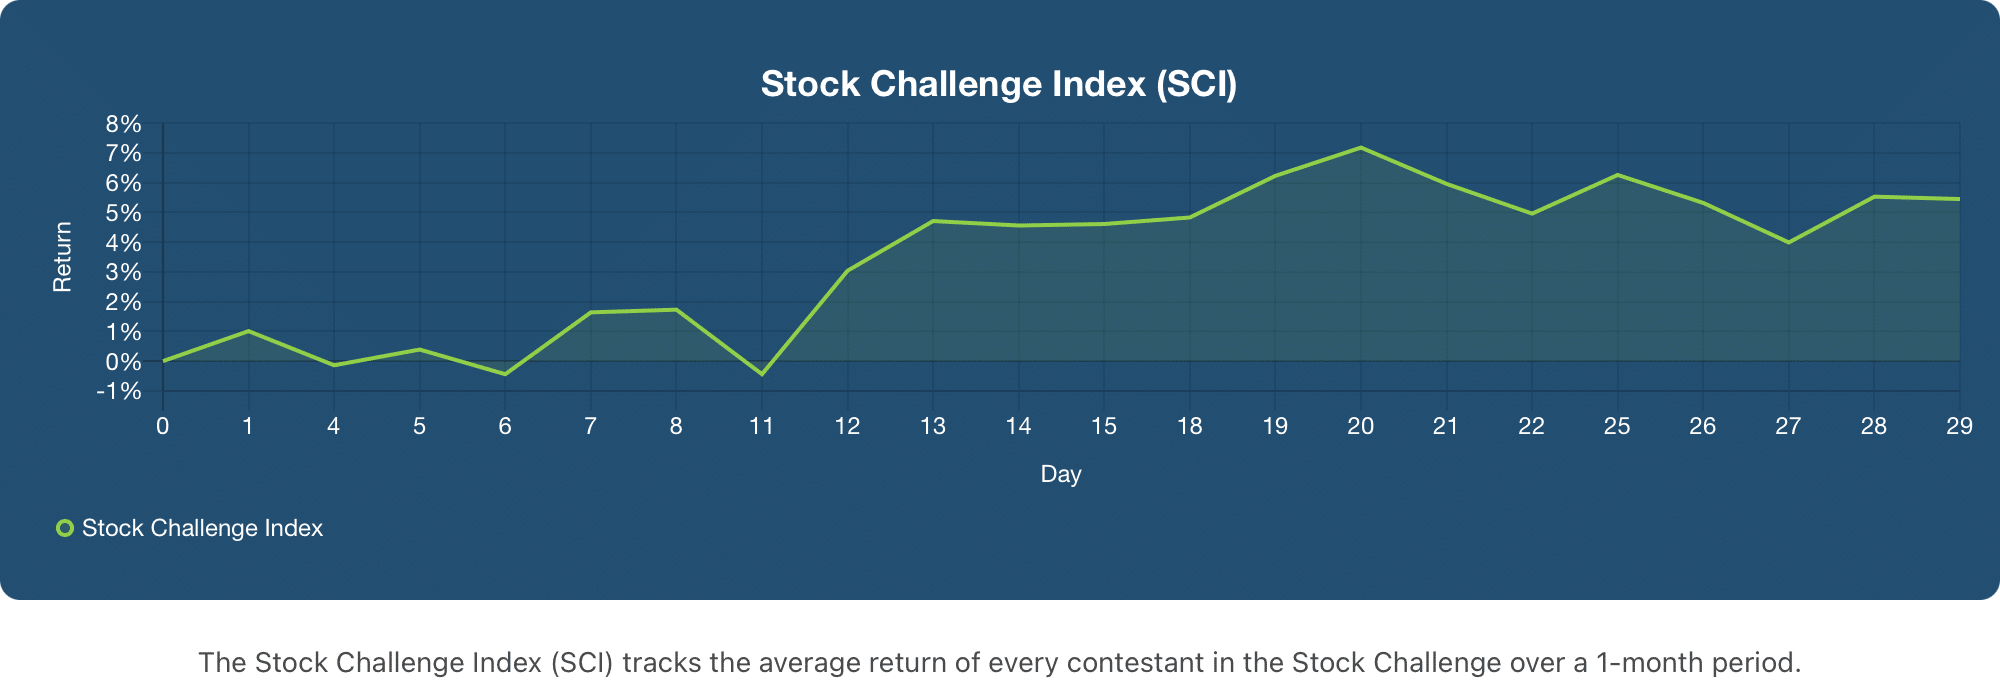 October Stock Challenge Index